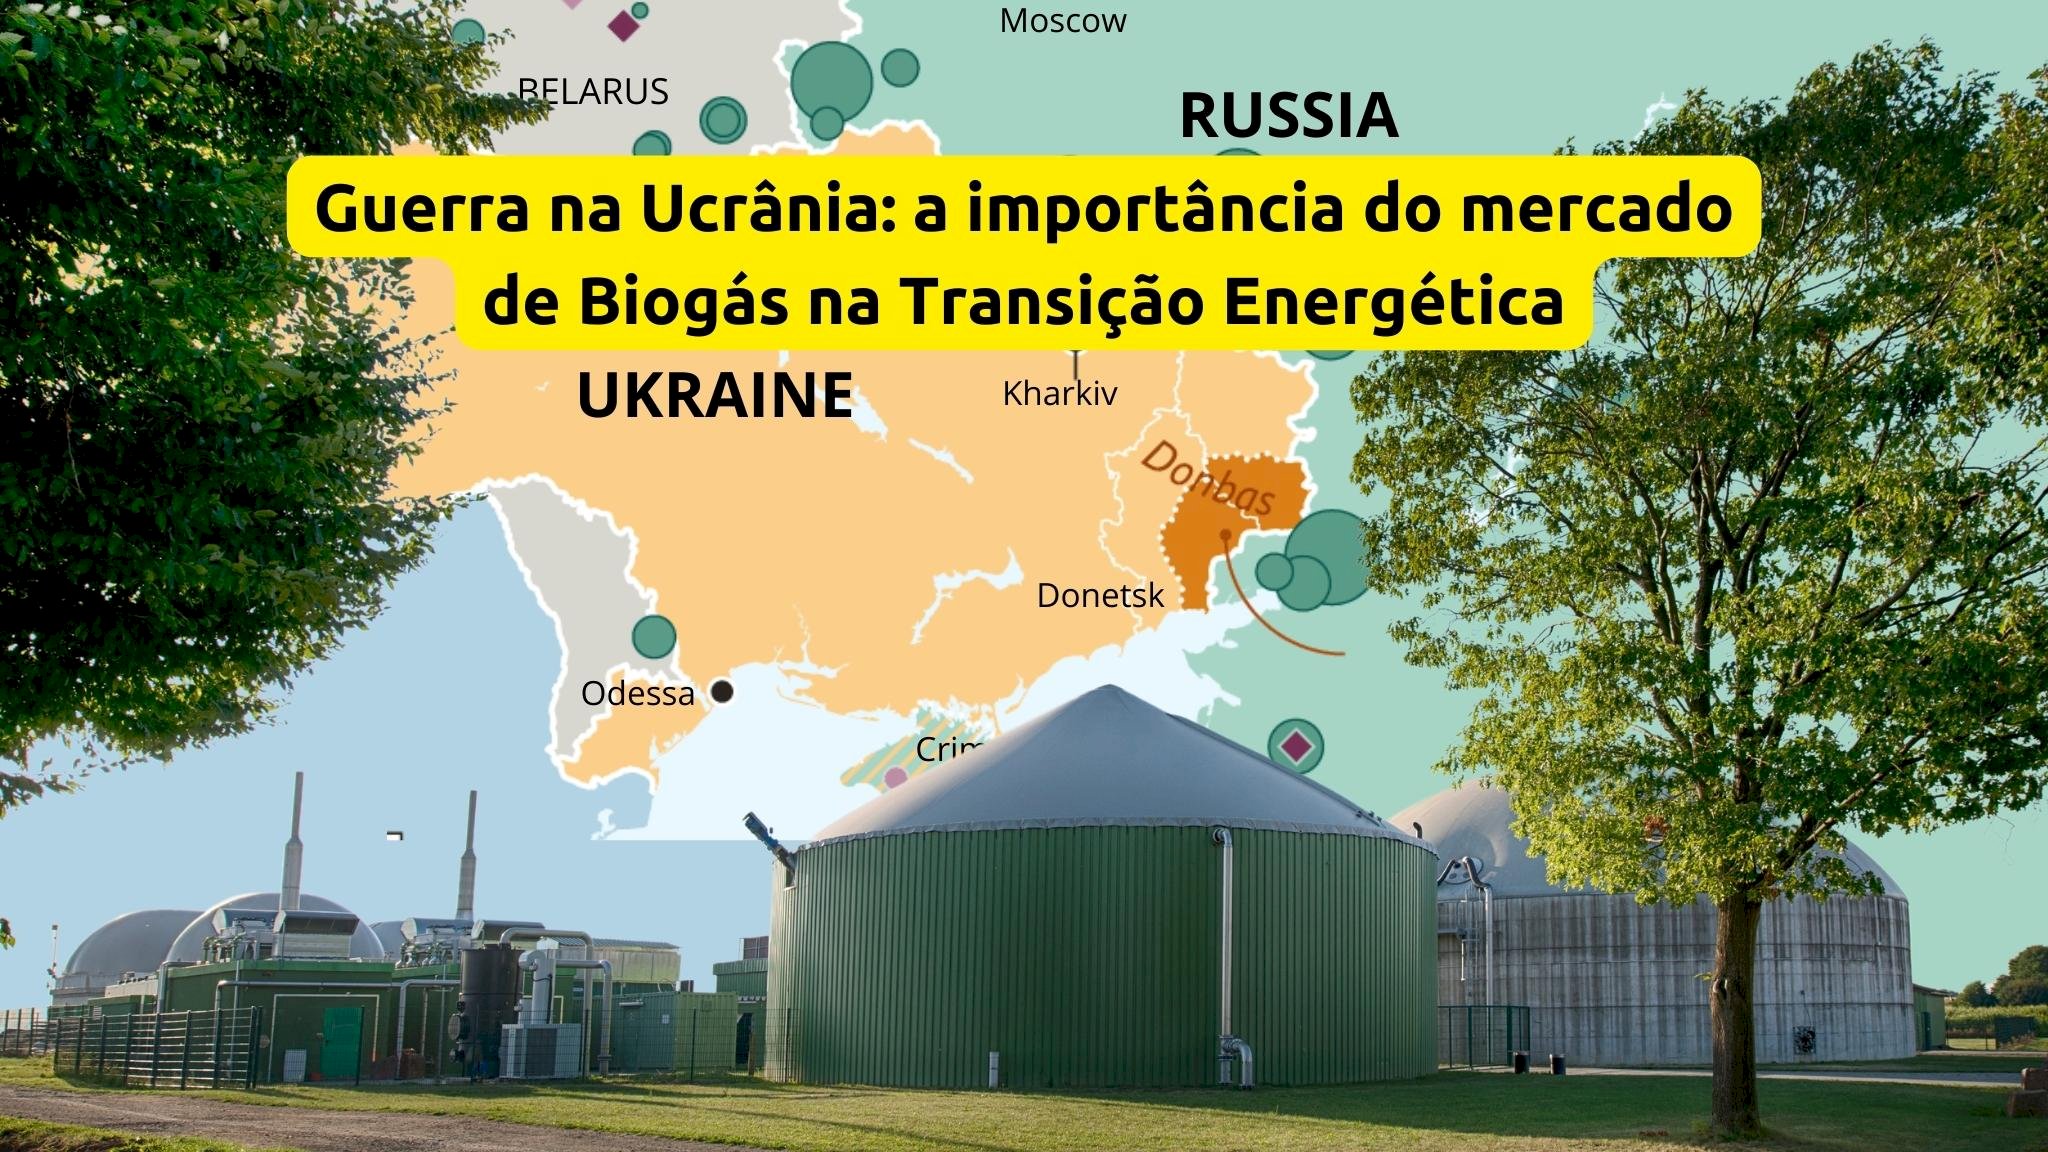 Importância da guerra da Ucrânia no mercado de Biogás e na Transição Energética